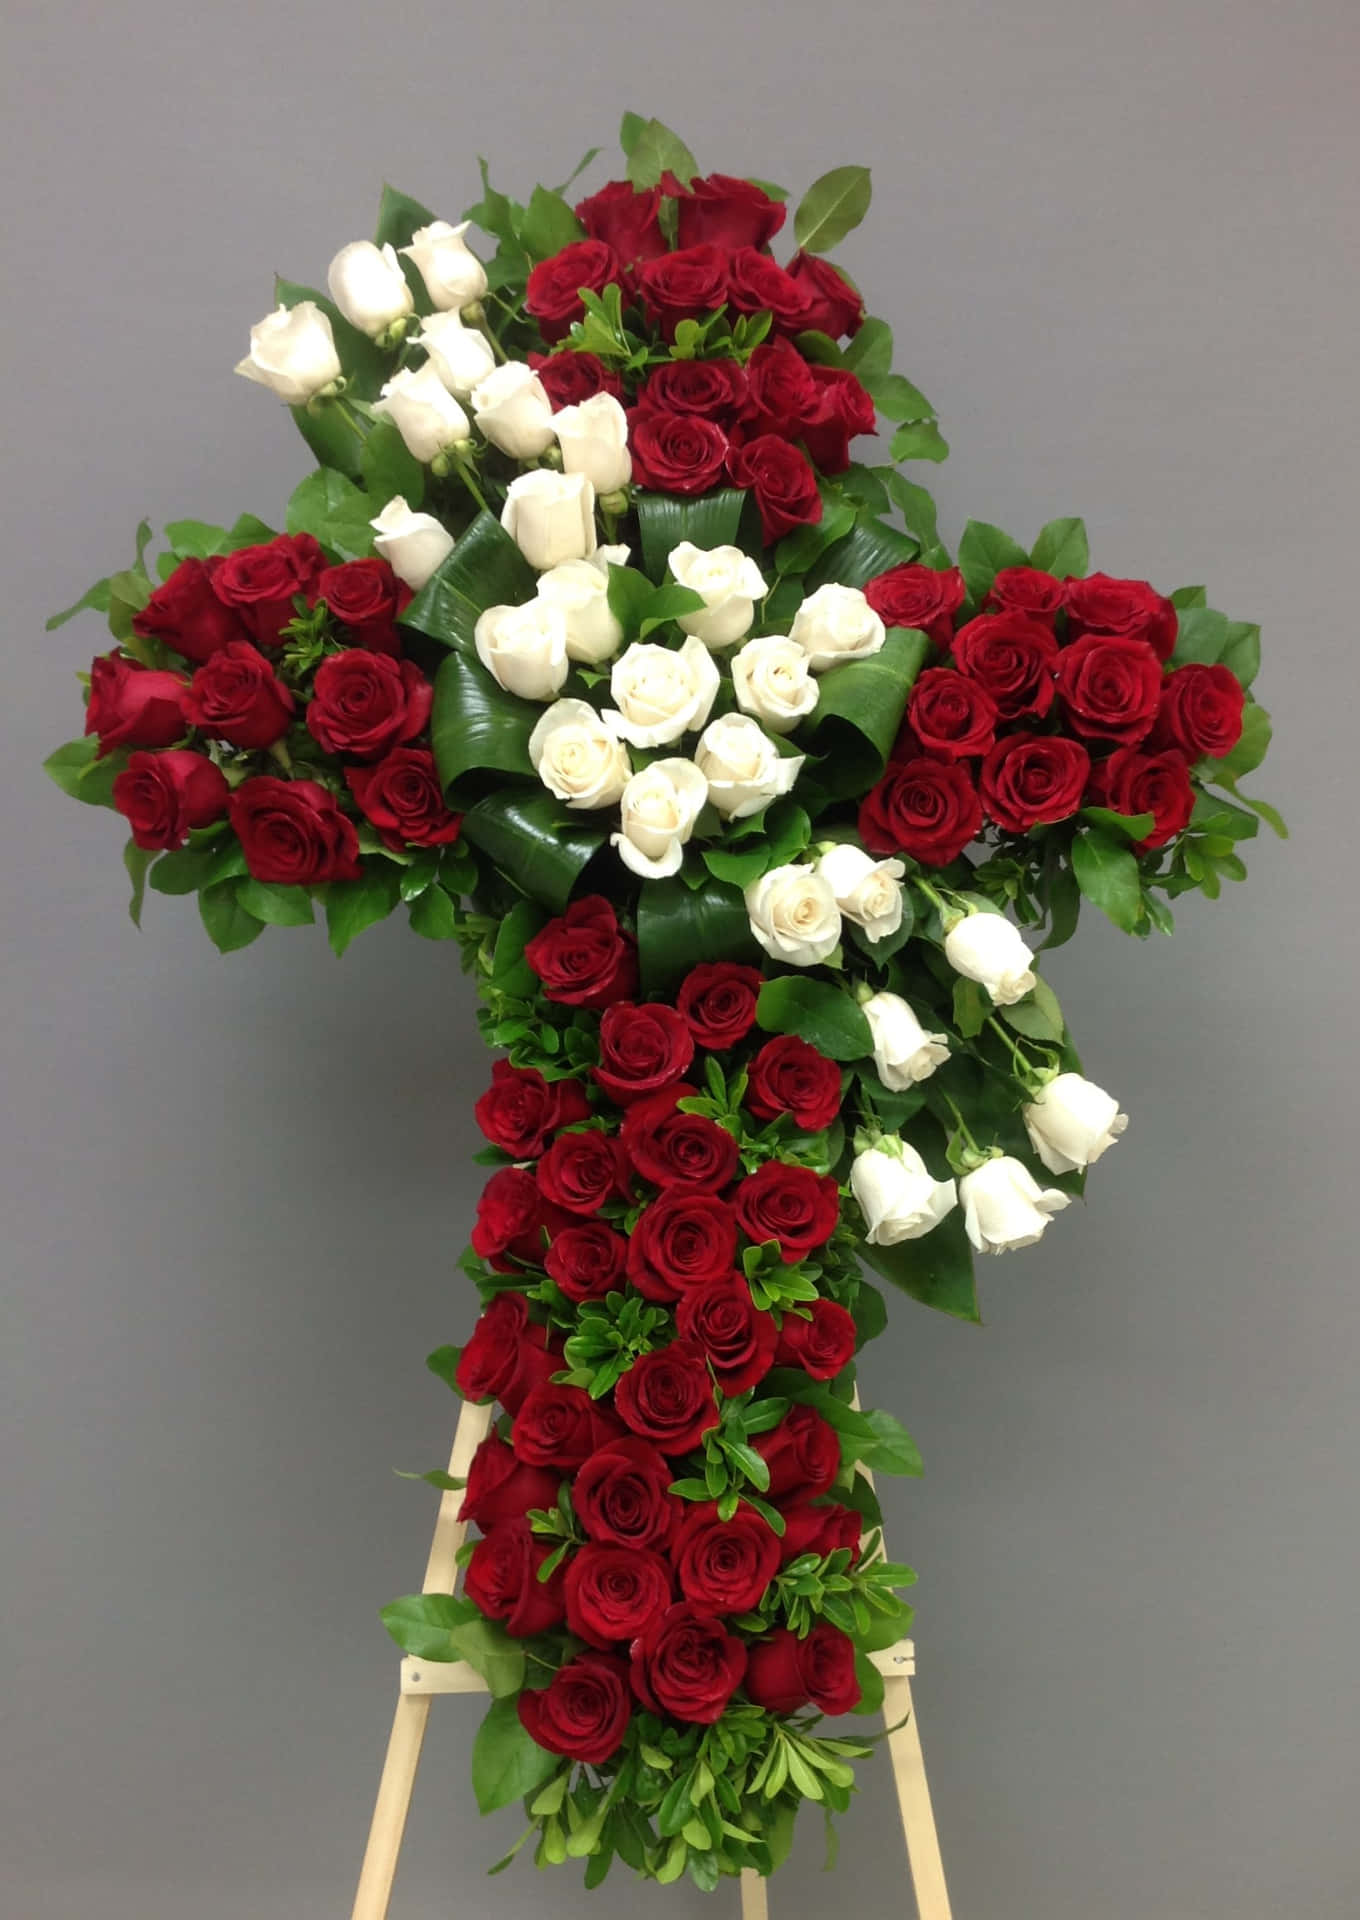 A beautiful, somber funeral flower arrangement